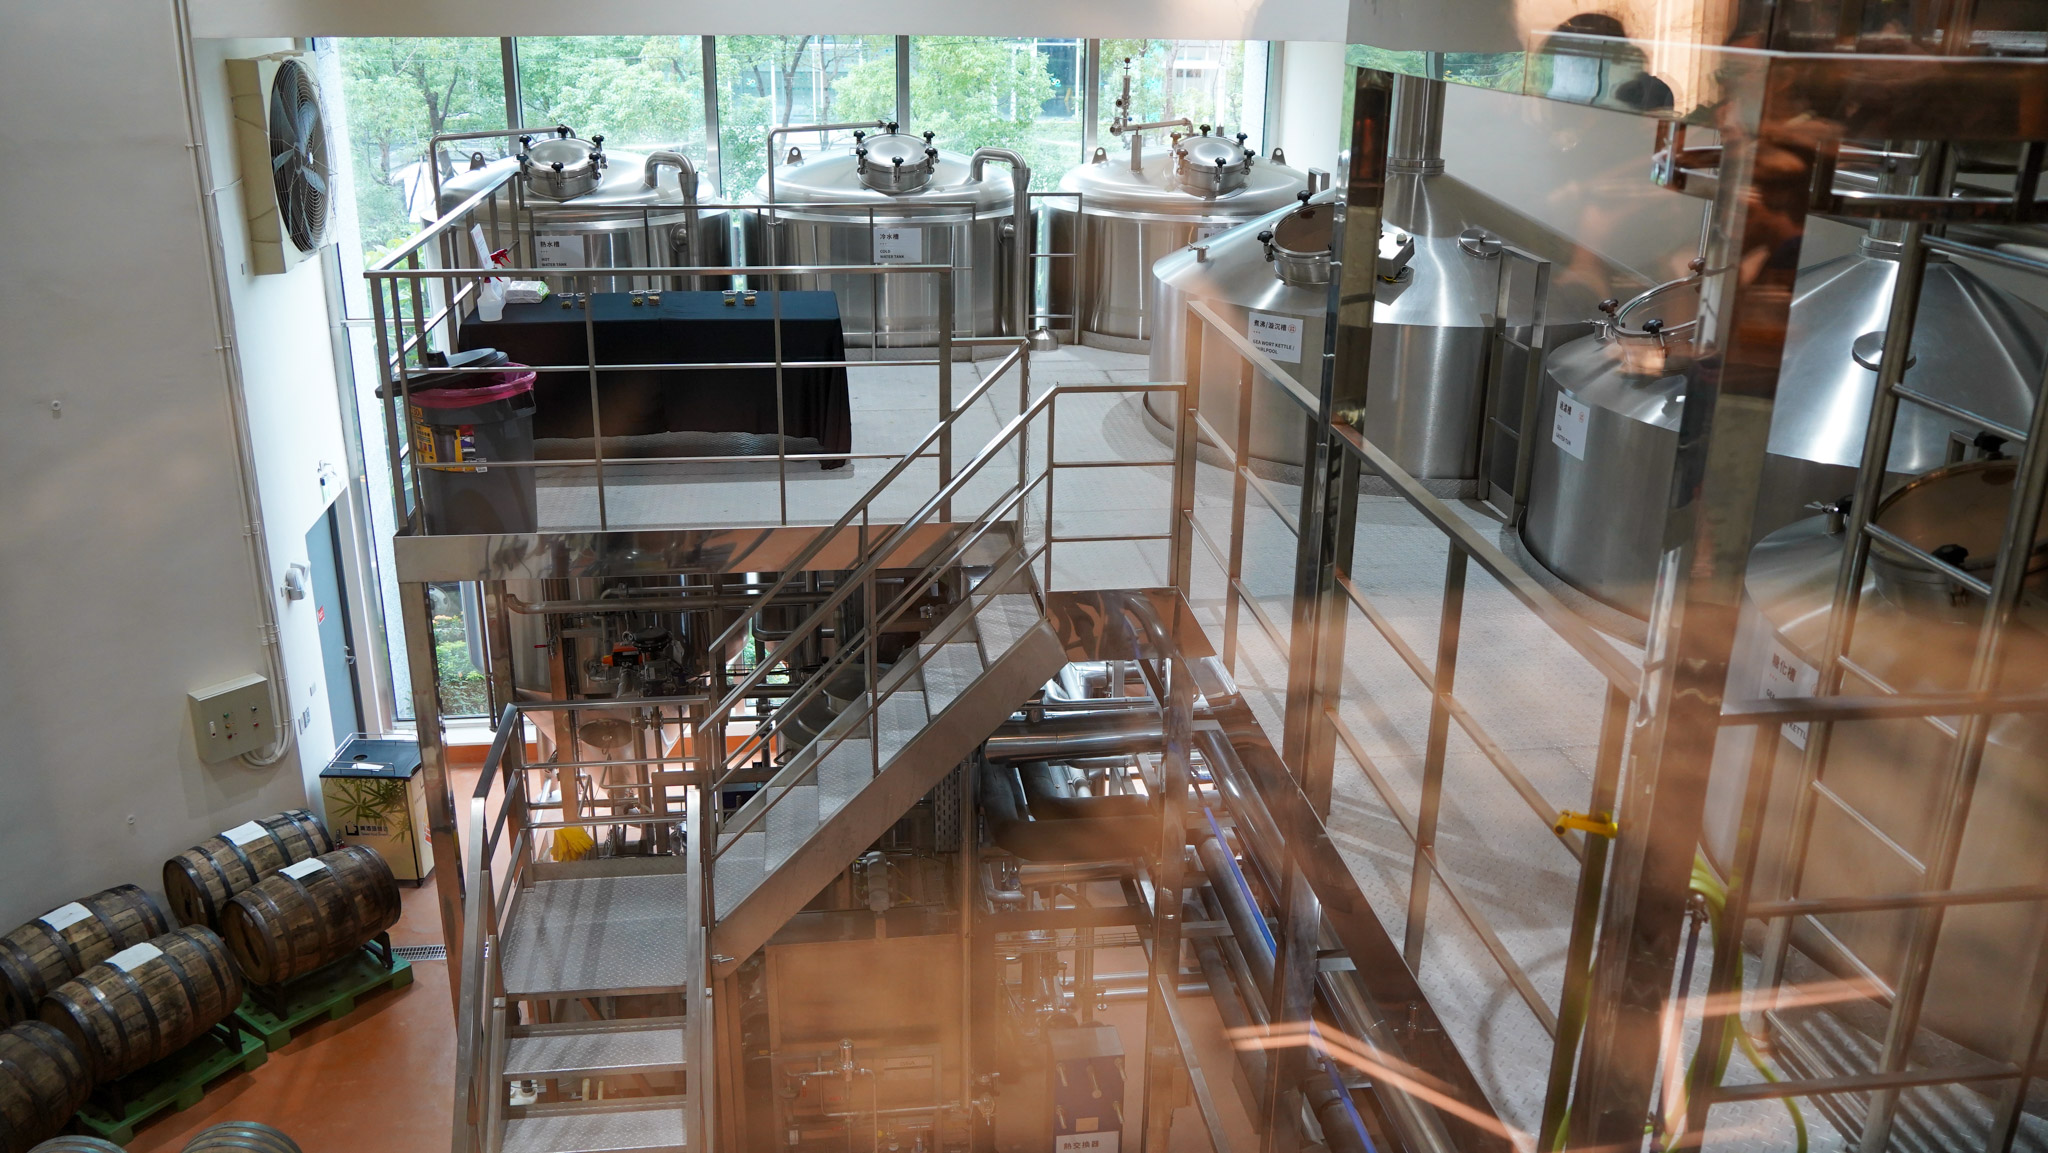 「啤酒頭釀造」酒廠特別引進頂級德國GEA釀造設備，打造二層樓高的落地觀景窗，展示啤酒釀造製程中最重要的糖化釀造設備，讓參觀者可近距離一覽釀造過程。